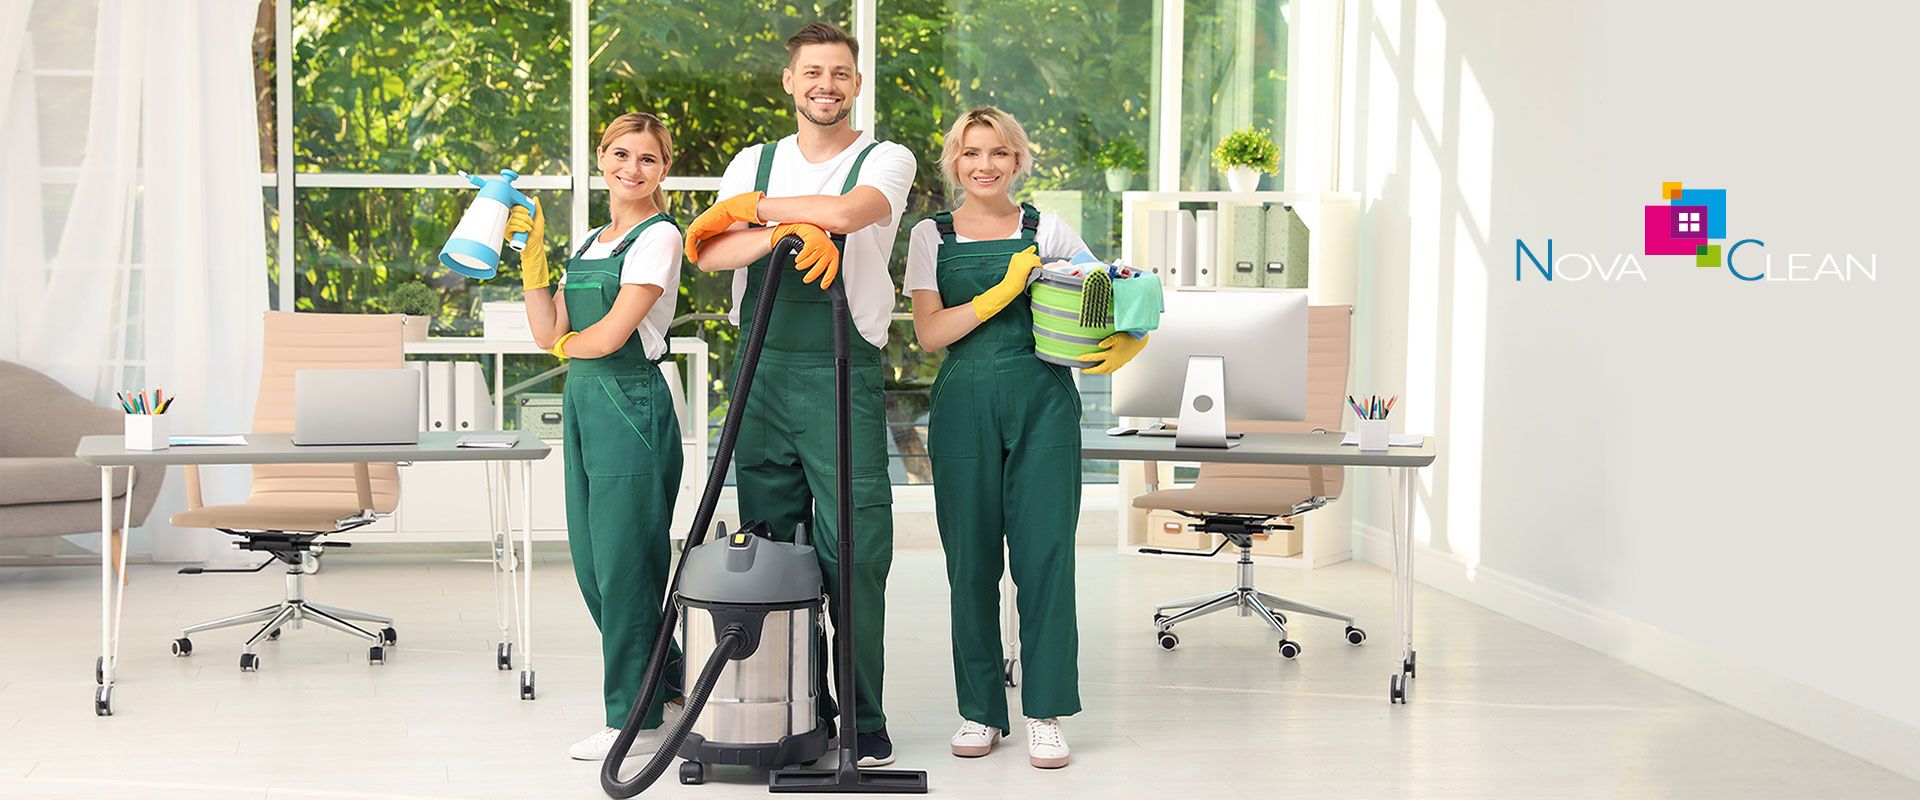 Entreprise de nettoyage de parkings et garages - NOVA CLEAN - Services de  nettoyage